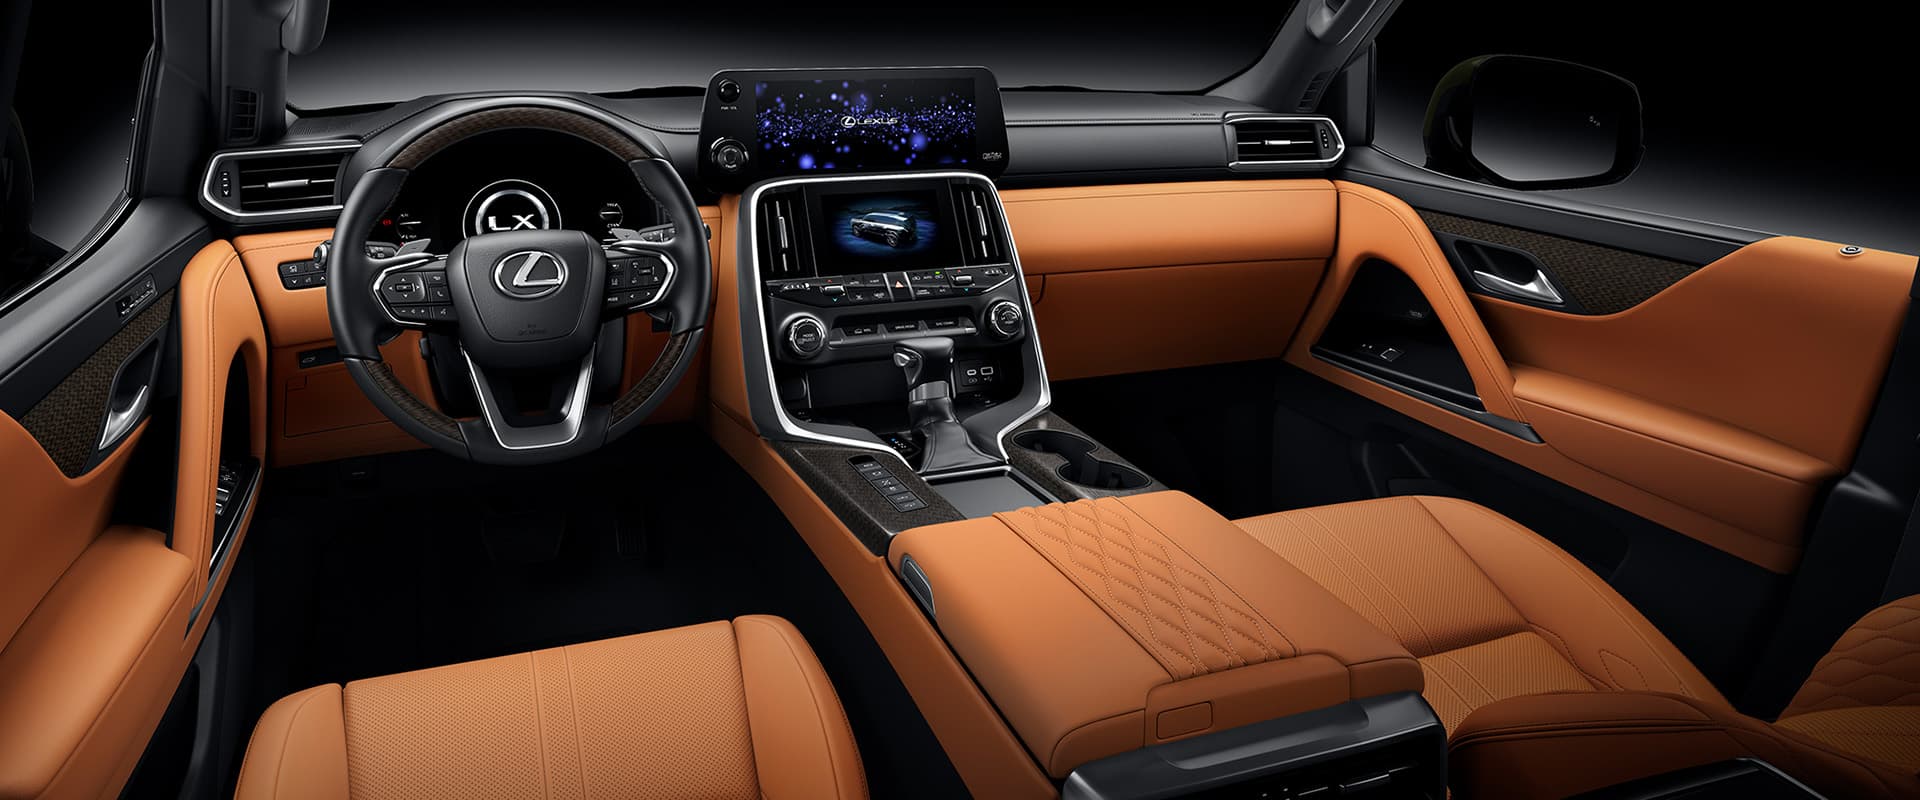 Nội thất Lexus LX600 VIP này mang đến những trải nghiệm VIP nhất